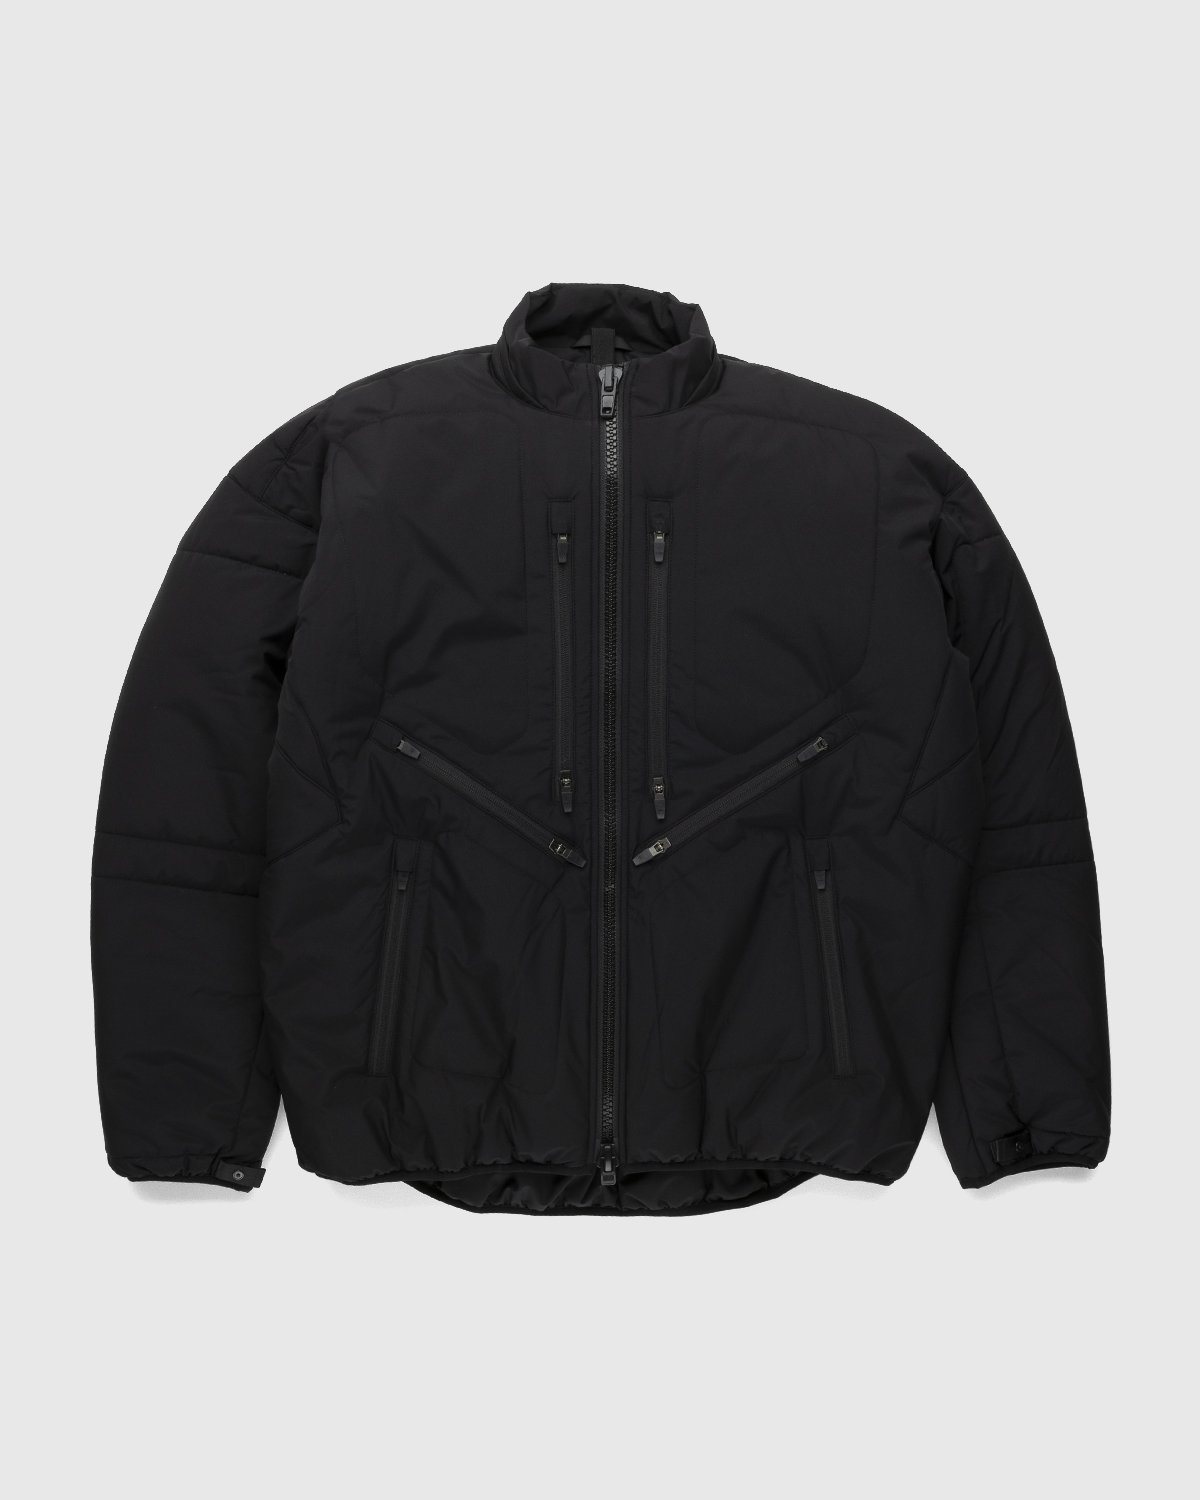 ACRONYM - J91-WS Jacket Black - Clothing - Black - Image 1